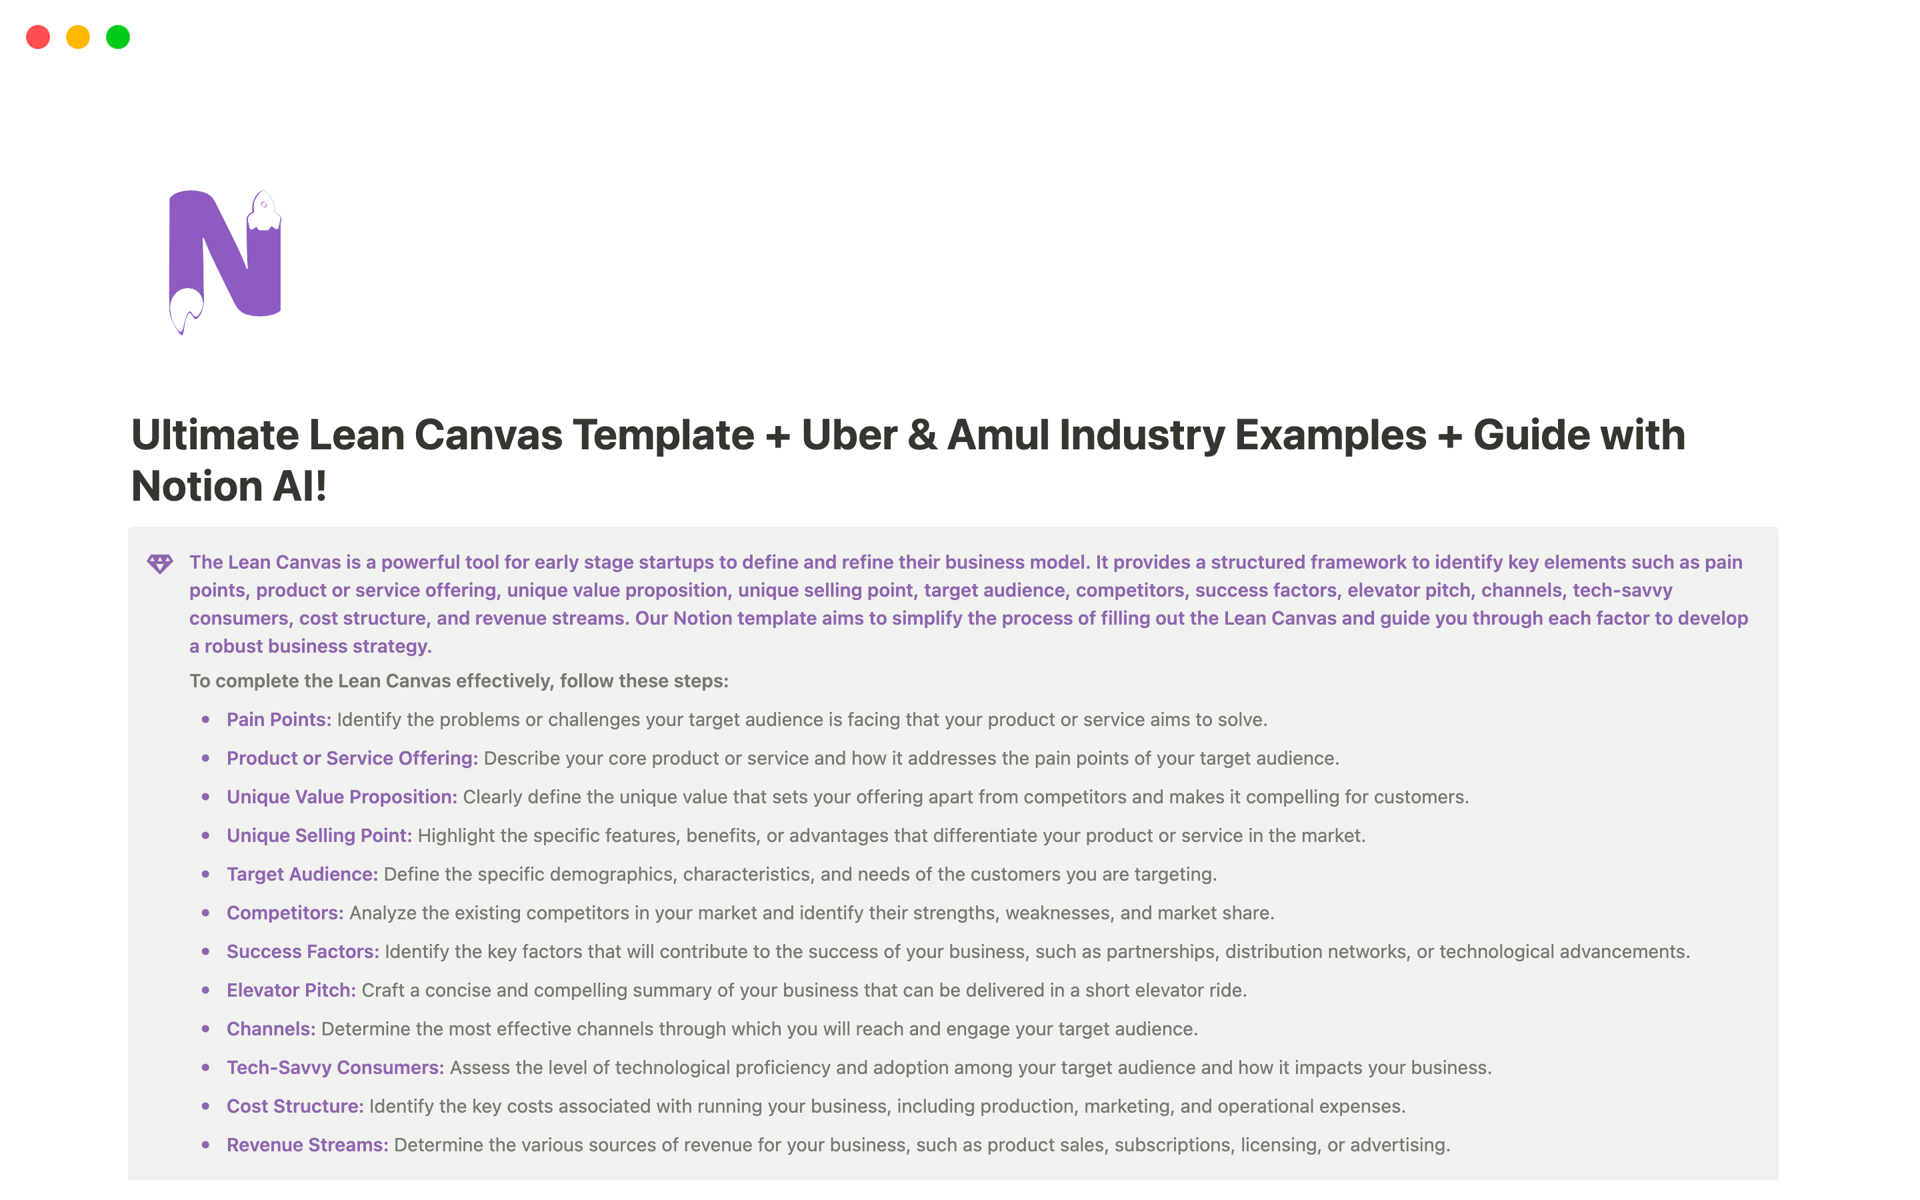 Uma prévia do modelo para Ultimate Lean Canvas with examples of Uber & Amul